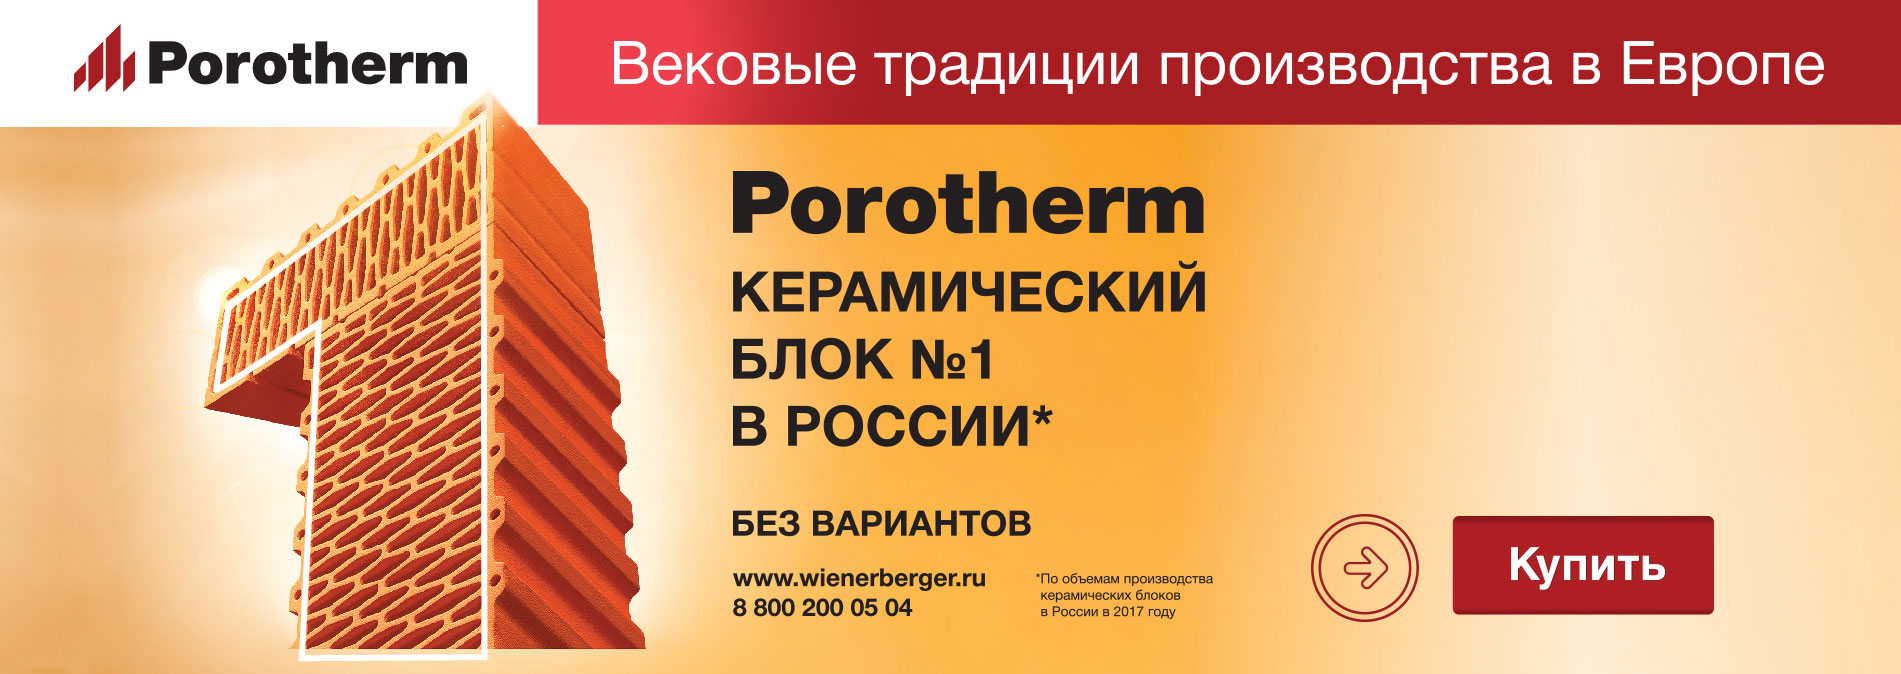 Porotherm.Керамический блок №1 в России